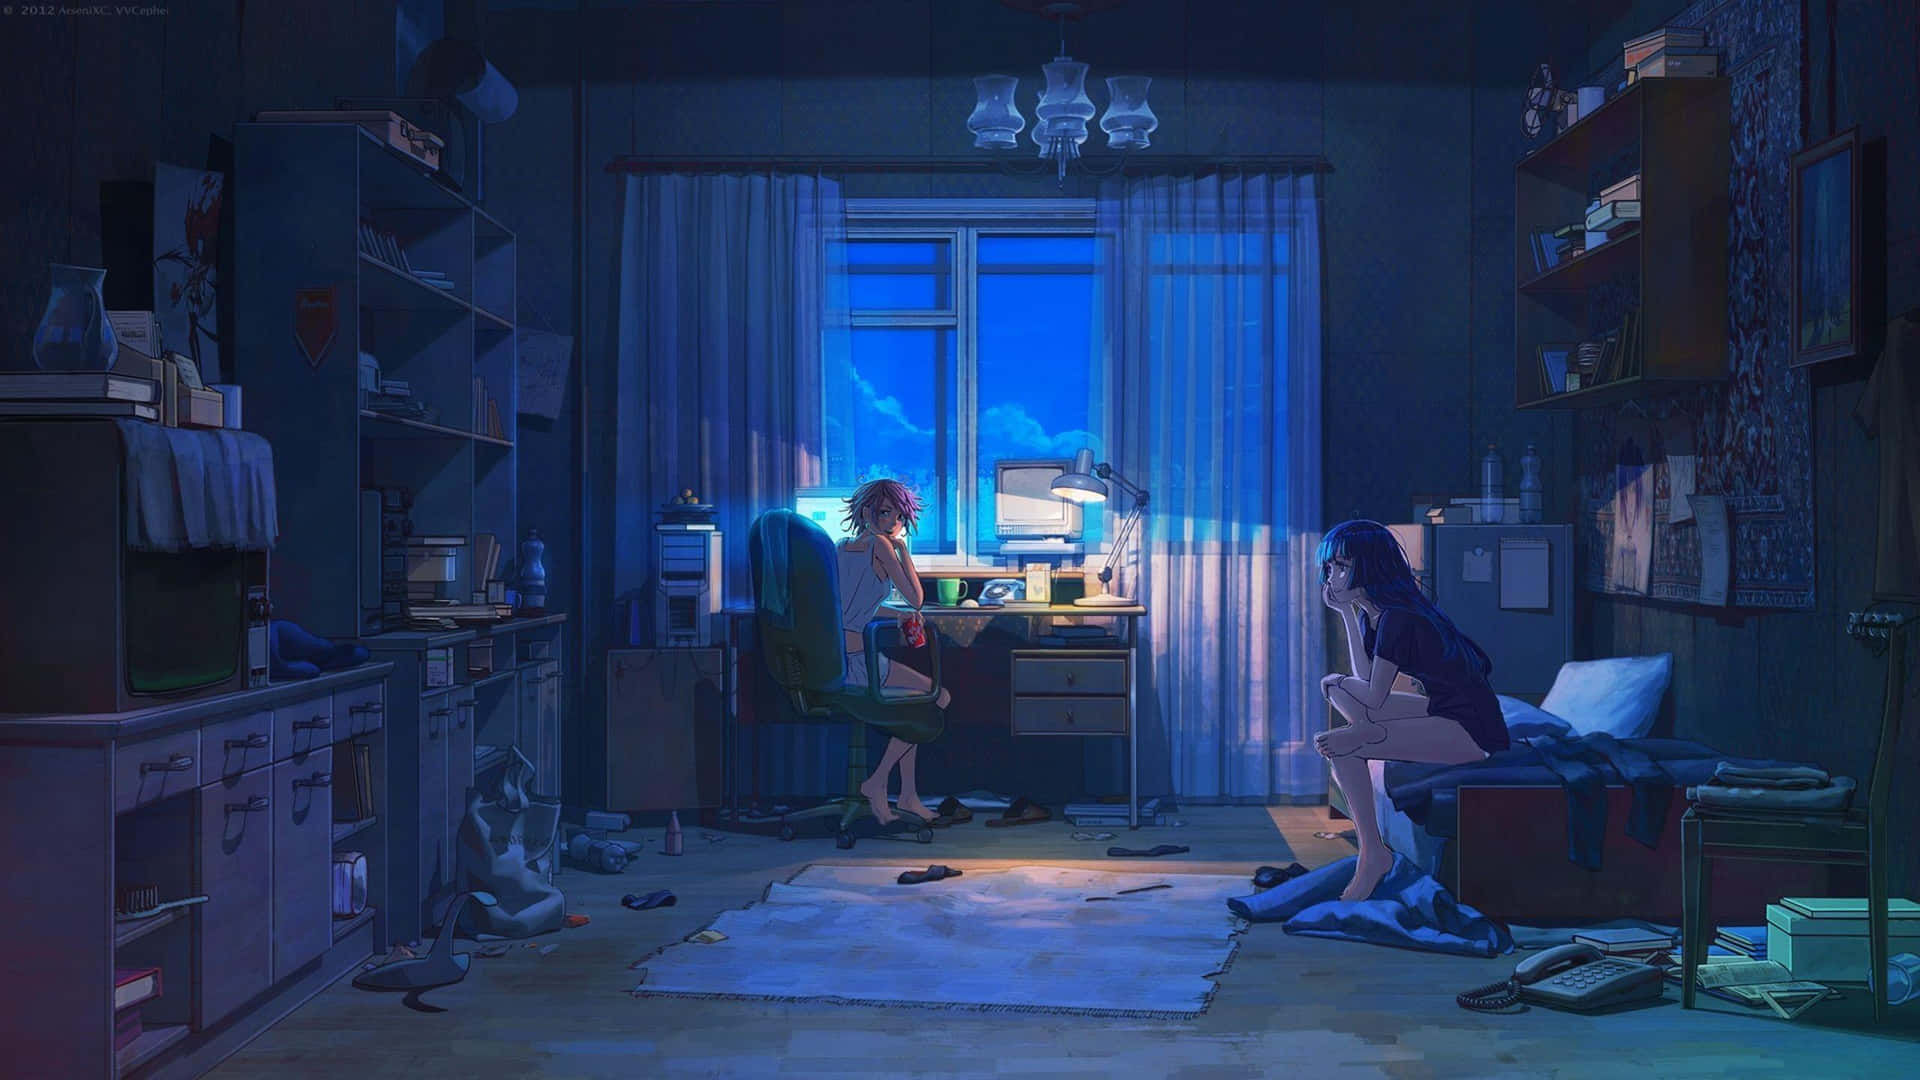 Lo Fi Anime Chill Couple In Room Wallpaper